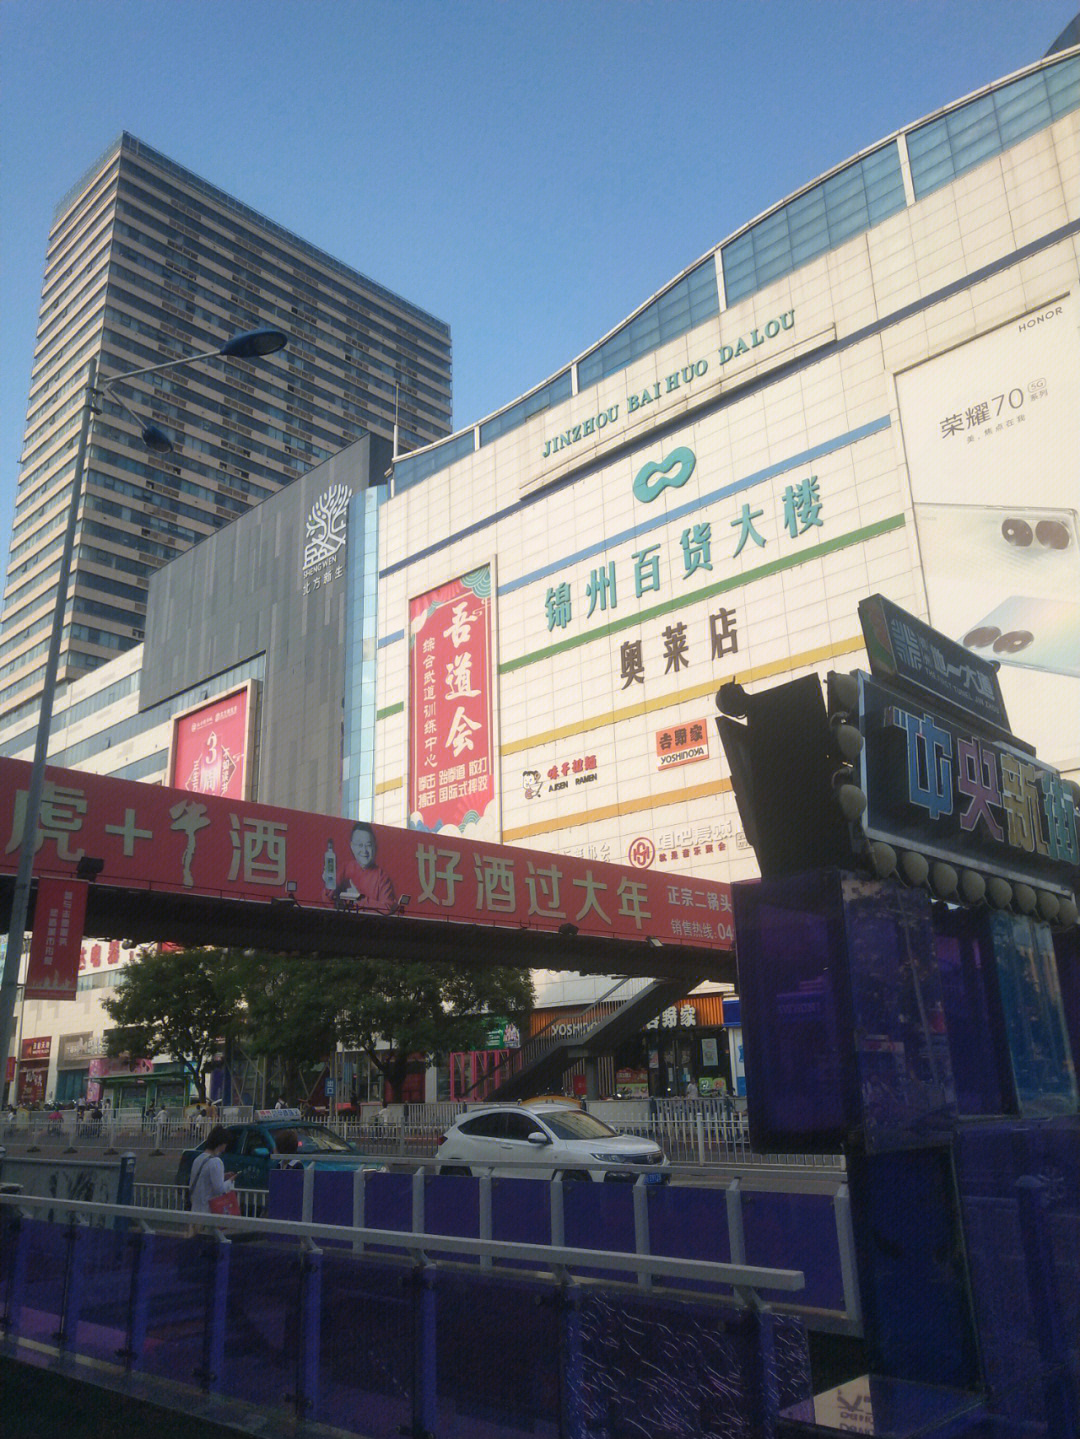 锦州  锦州市古塔区,第1张是百货大楼,第2张是古塔夜市,第3,4张是